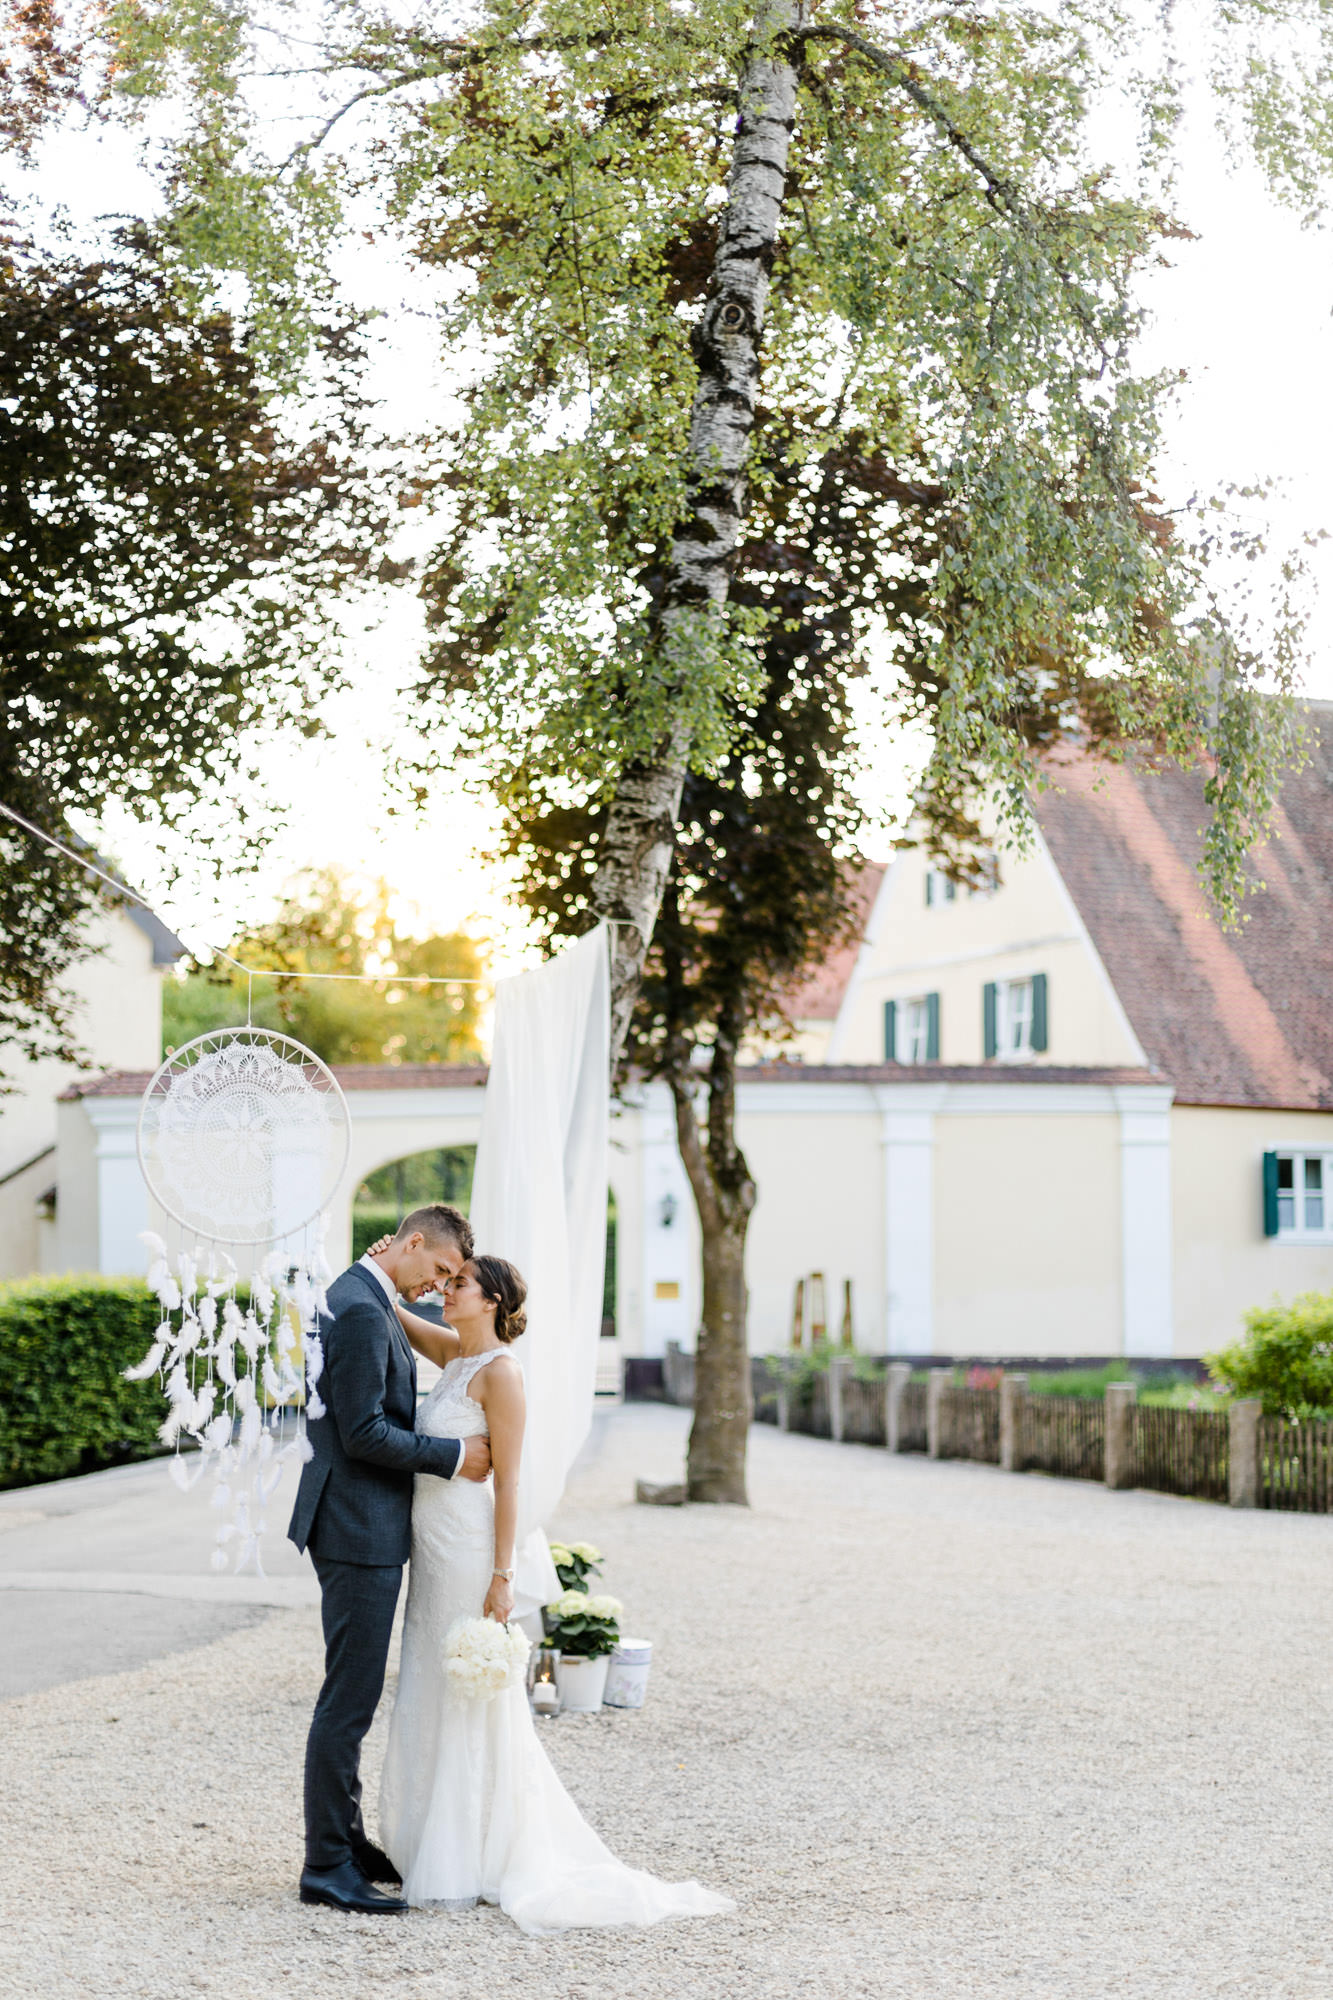 Hochzeit Verena & Mathias, Gut Mergenthau, Kissing - Hochzeitsreportage fotografiert von Yvonne & Rolland Photography